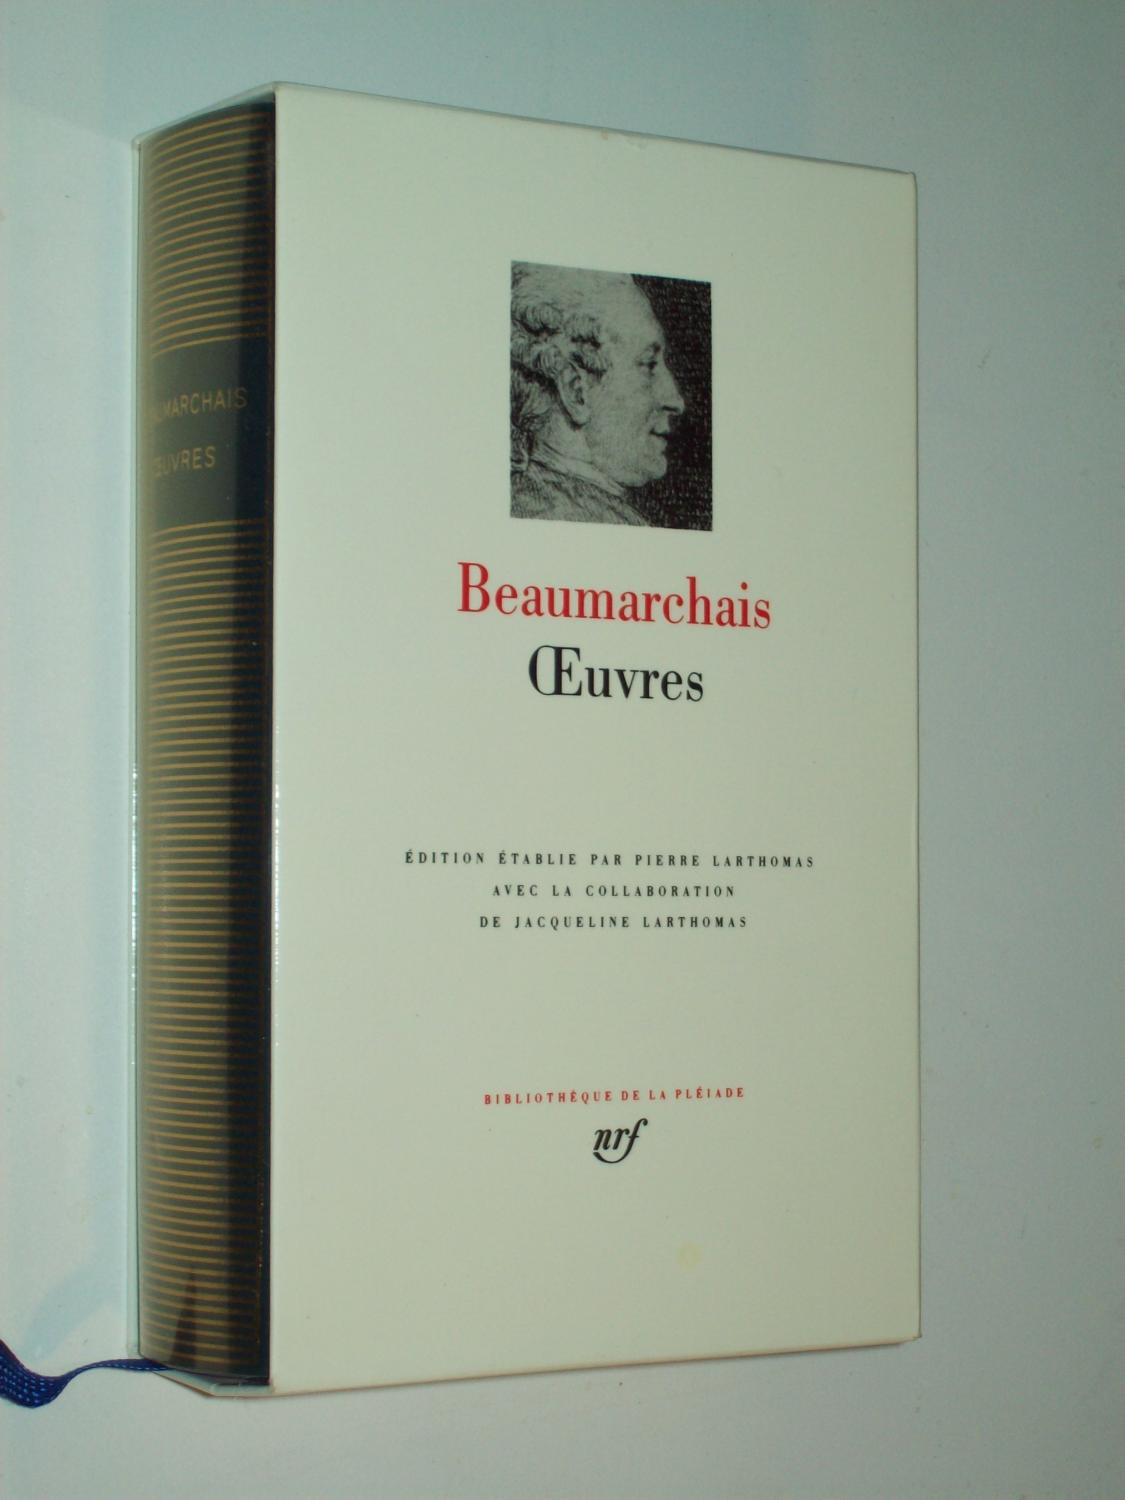 Oeuvres (Bibliothèque de la Pléiade) - Beaumarchais: edited by Pierre Larthomas and Jacqueline Larthomas